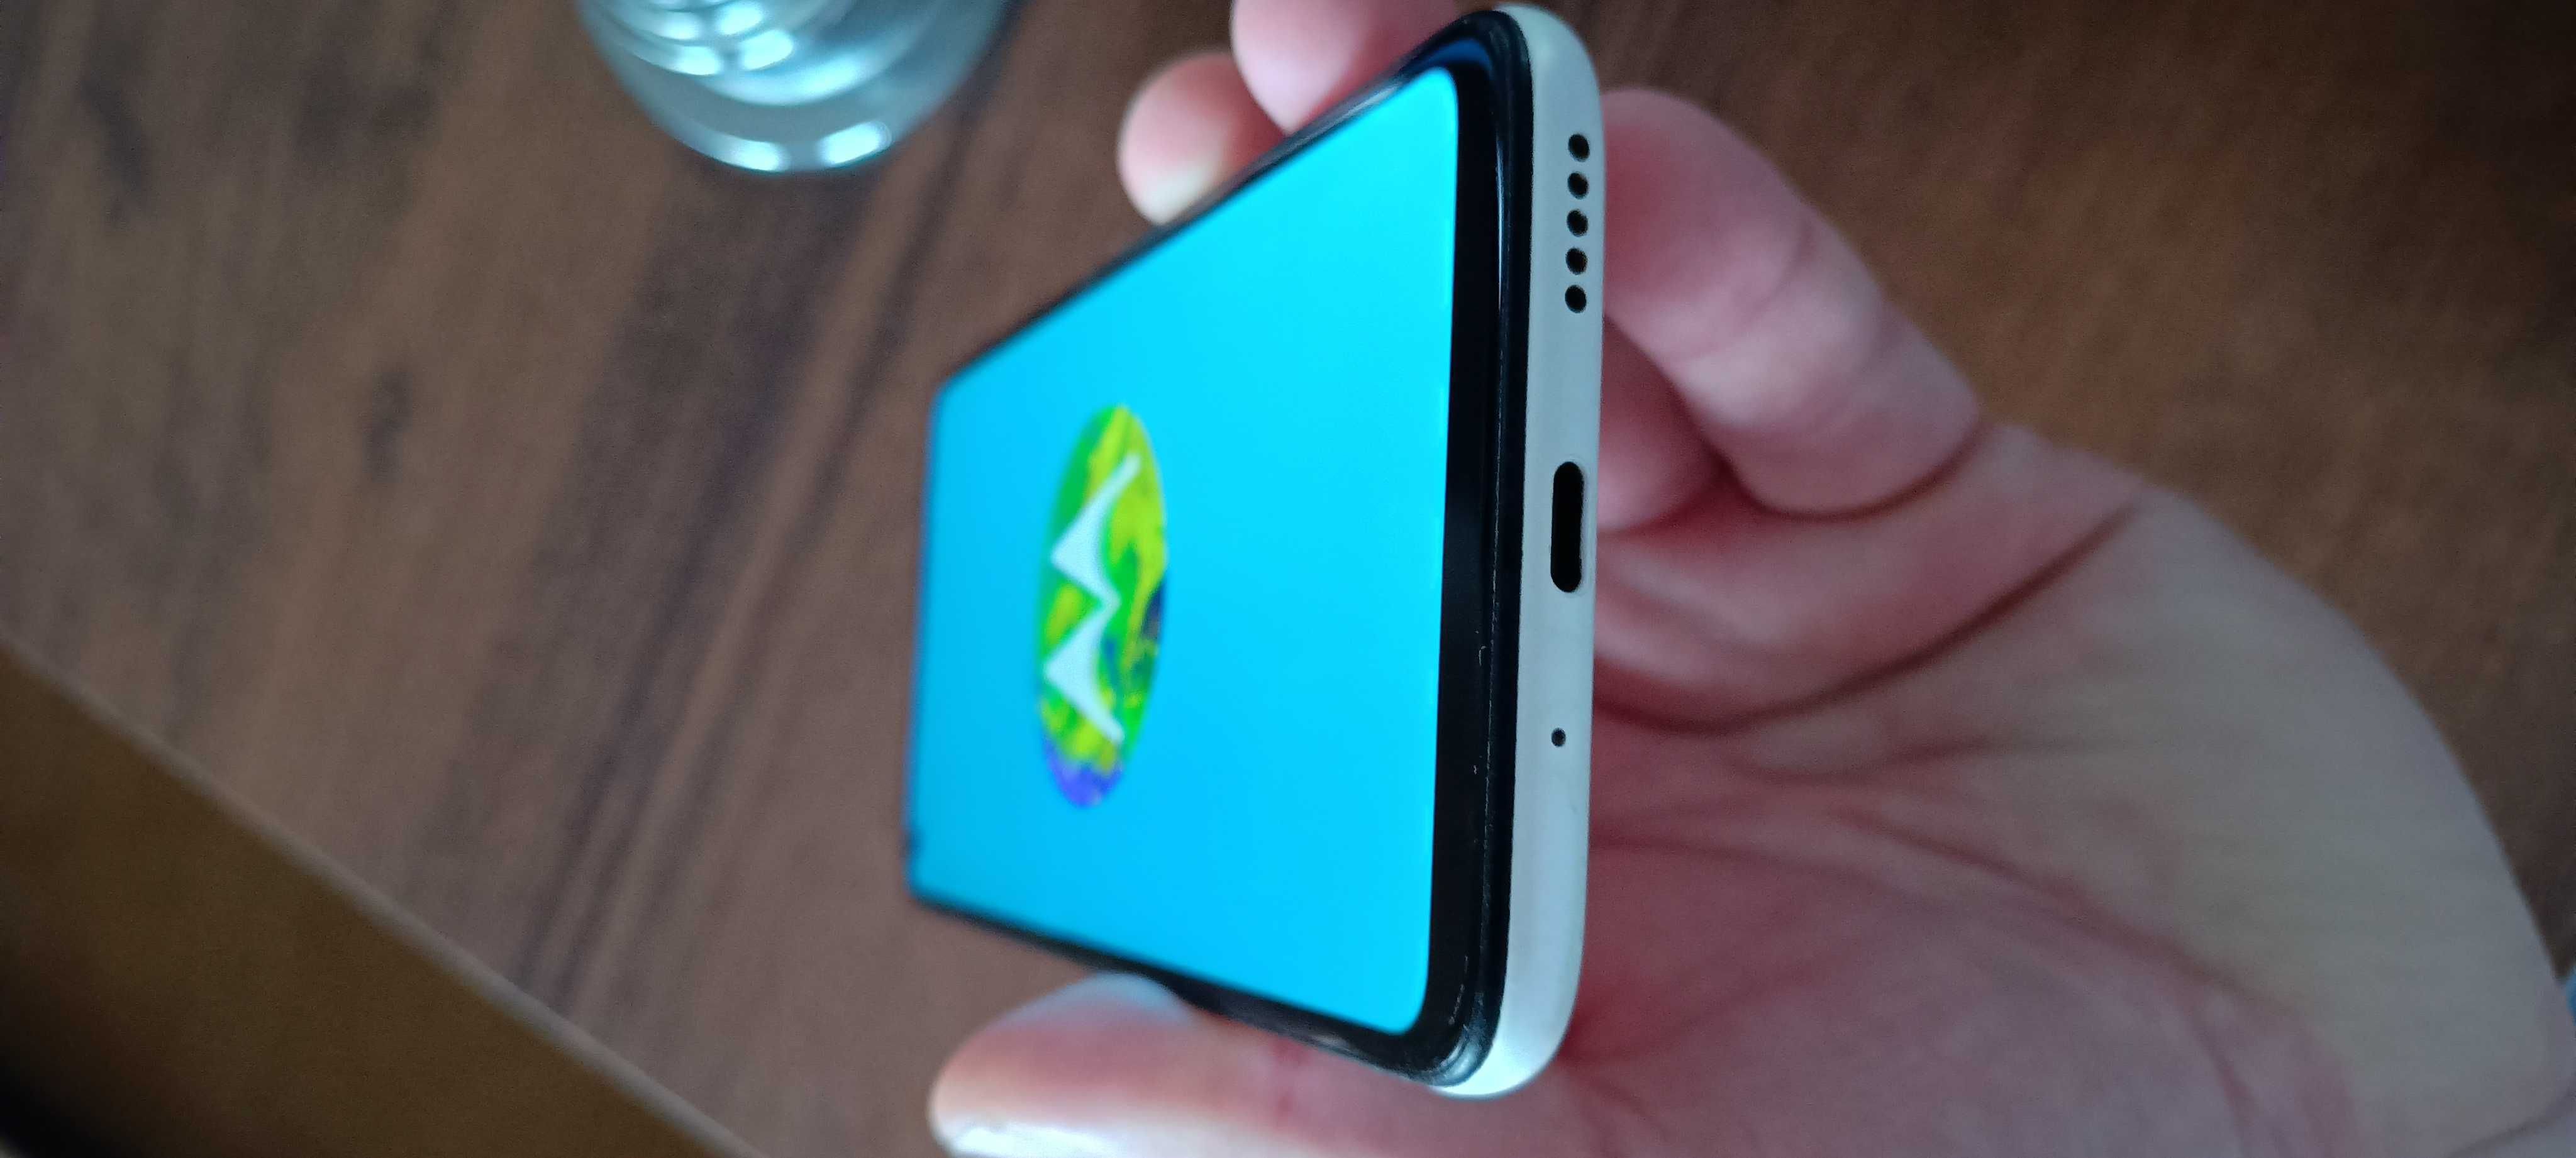 Sprawny smartfon Motorola Moto g8